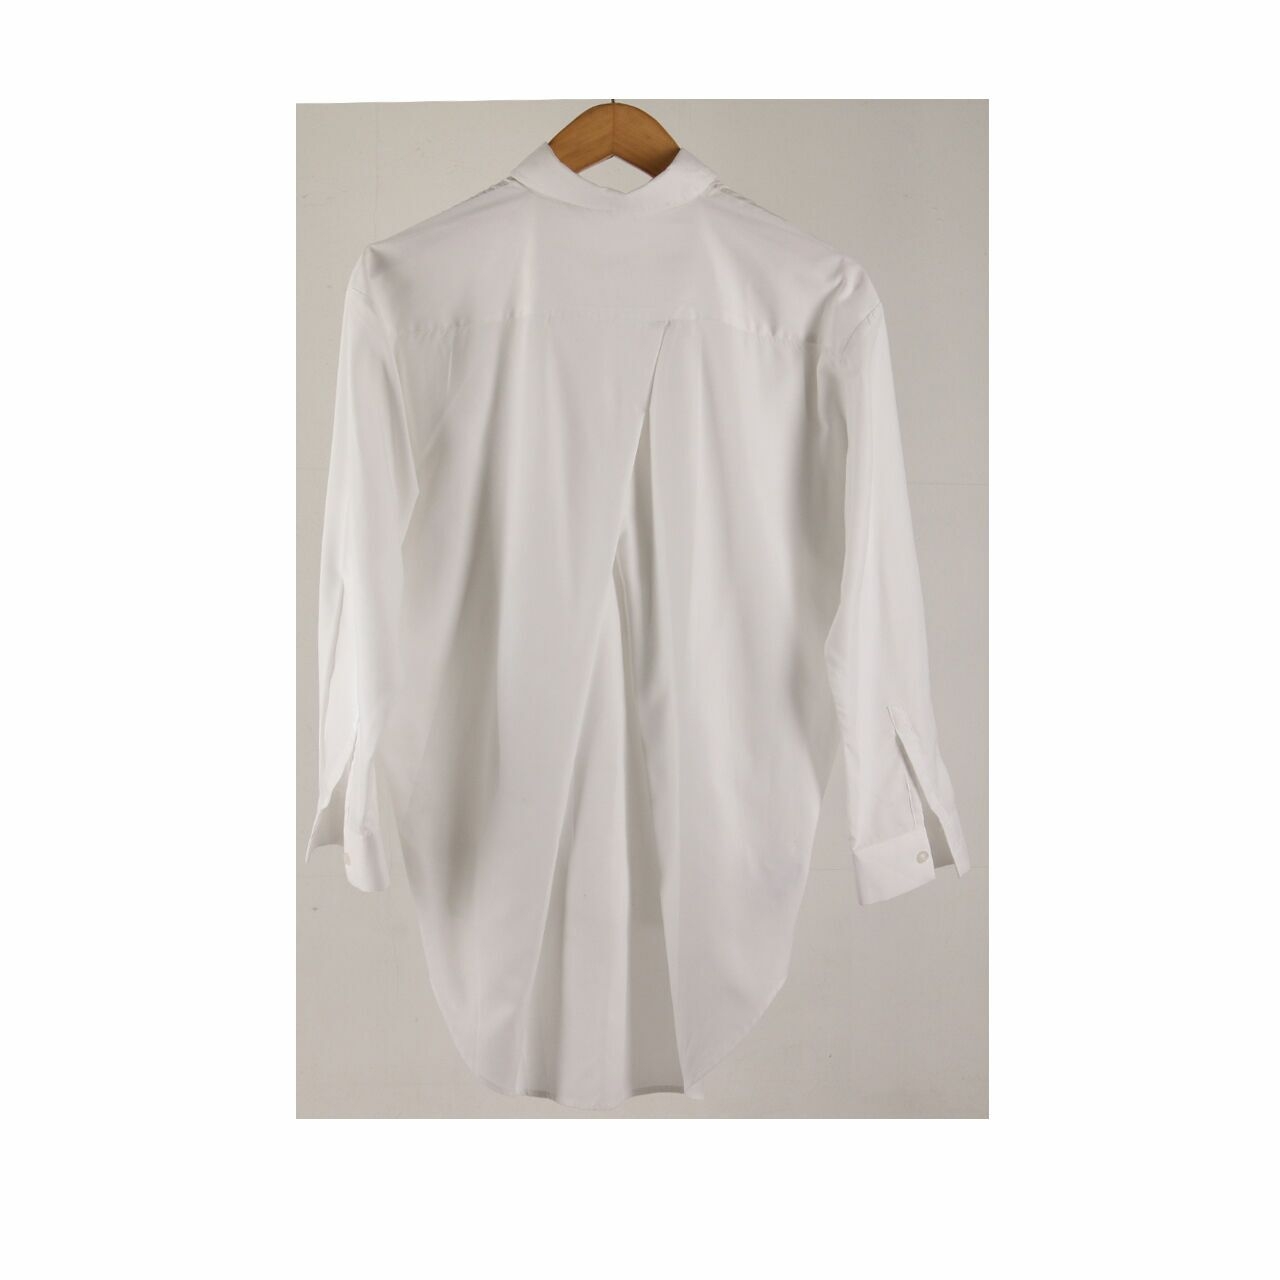 MASSHIRO&Co. White Tunik Shirt